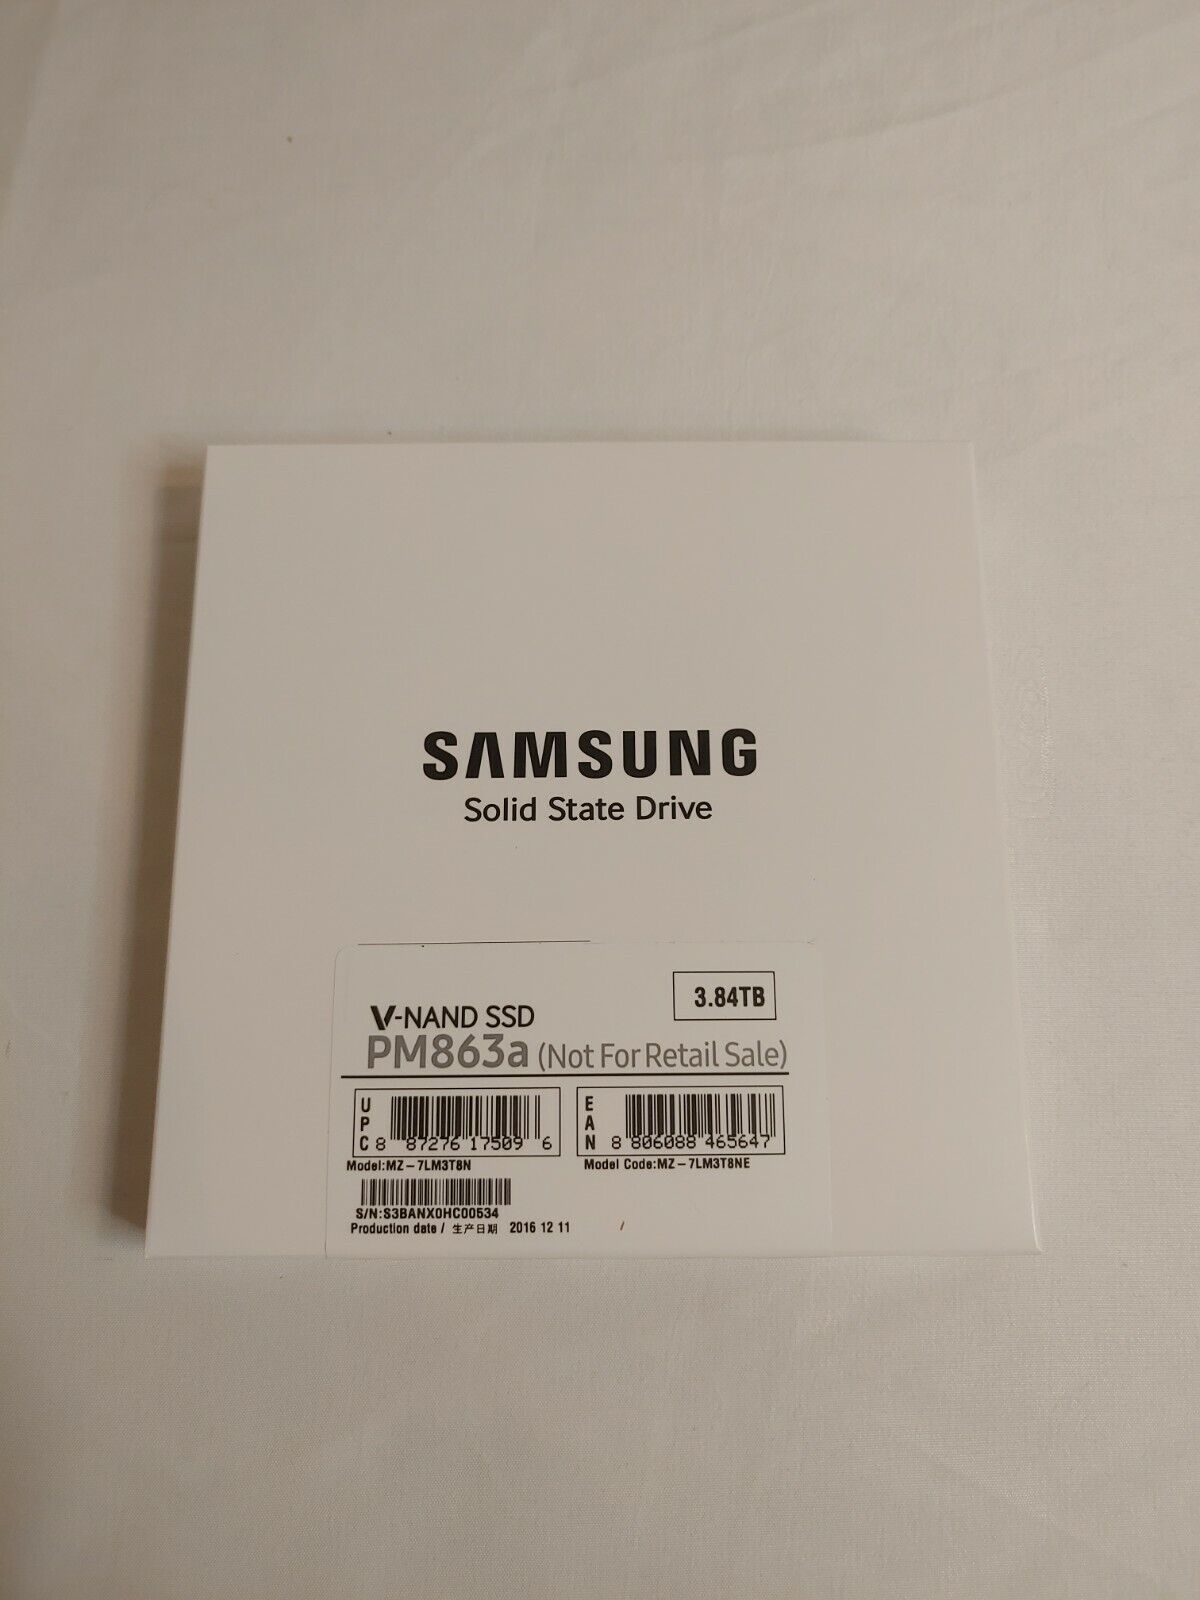 Samsung Enterprise SSD PM863a 3.84TB 2.5 SATA-III (MZ-7LM3T8N)